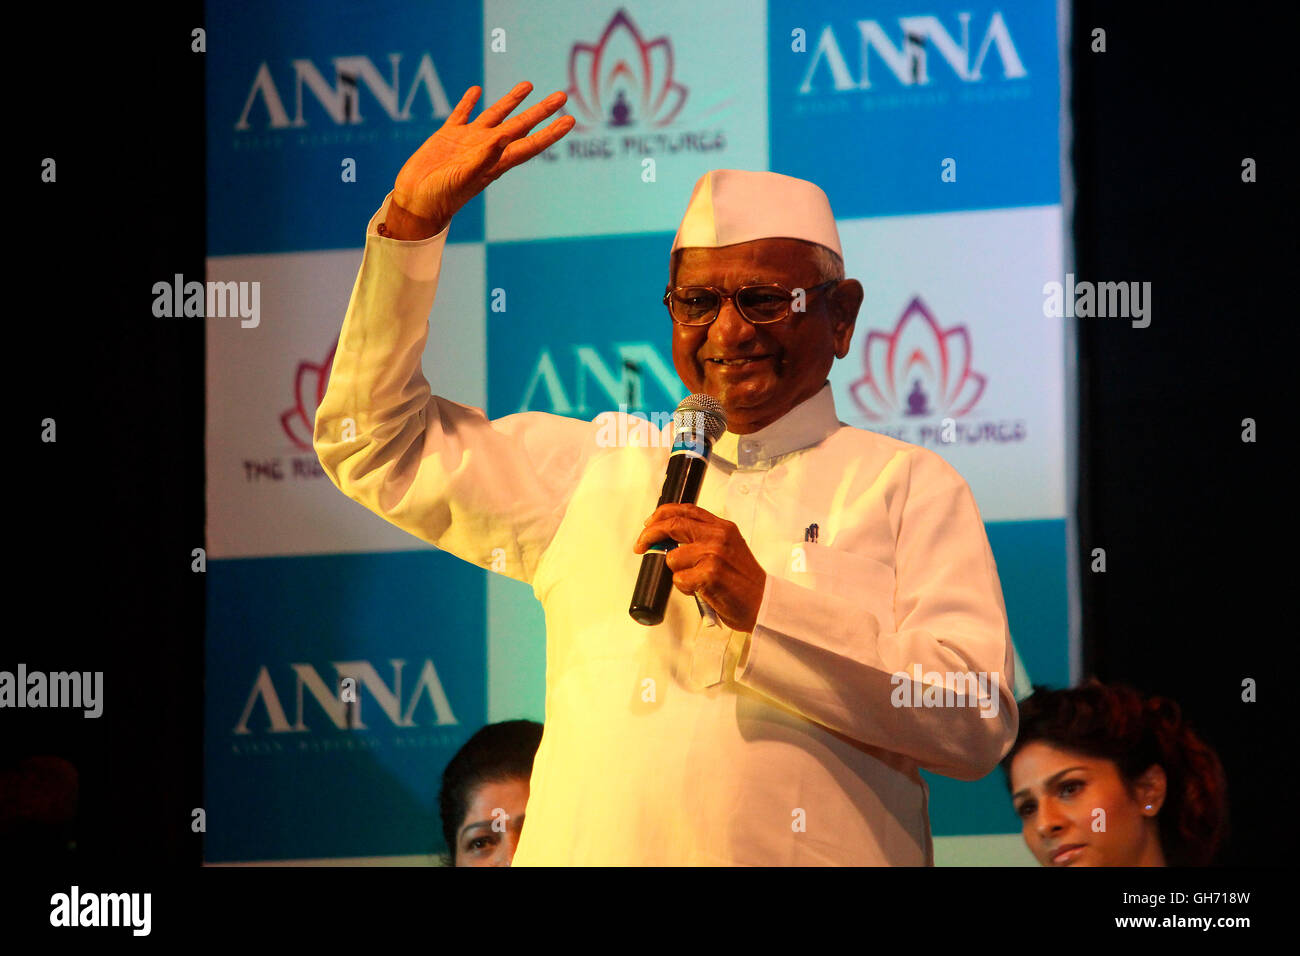 Personnalité célèbre Anna Hazare en disant quelques mots de sagesse sur l'affiche de la cérémonie de lancement d'un prochain biopic sur sa vie. Banque D'Images